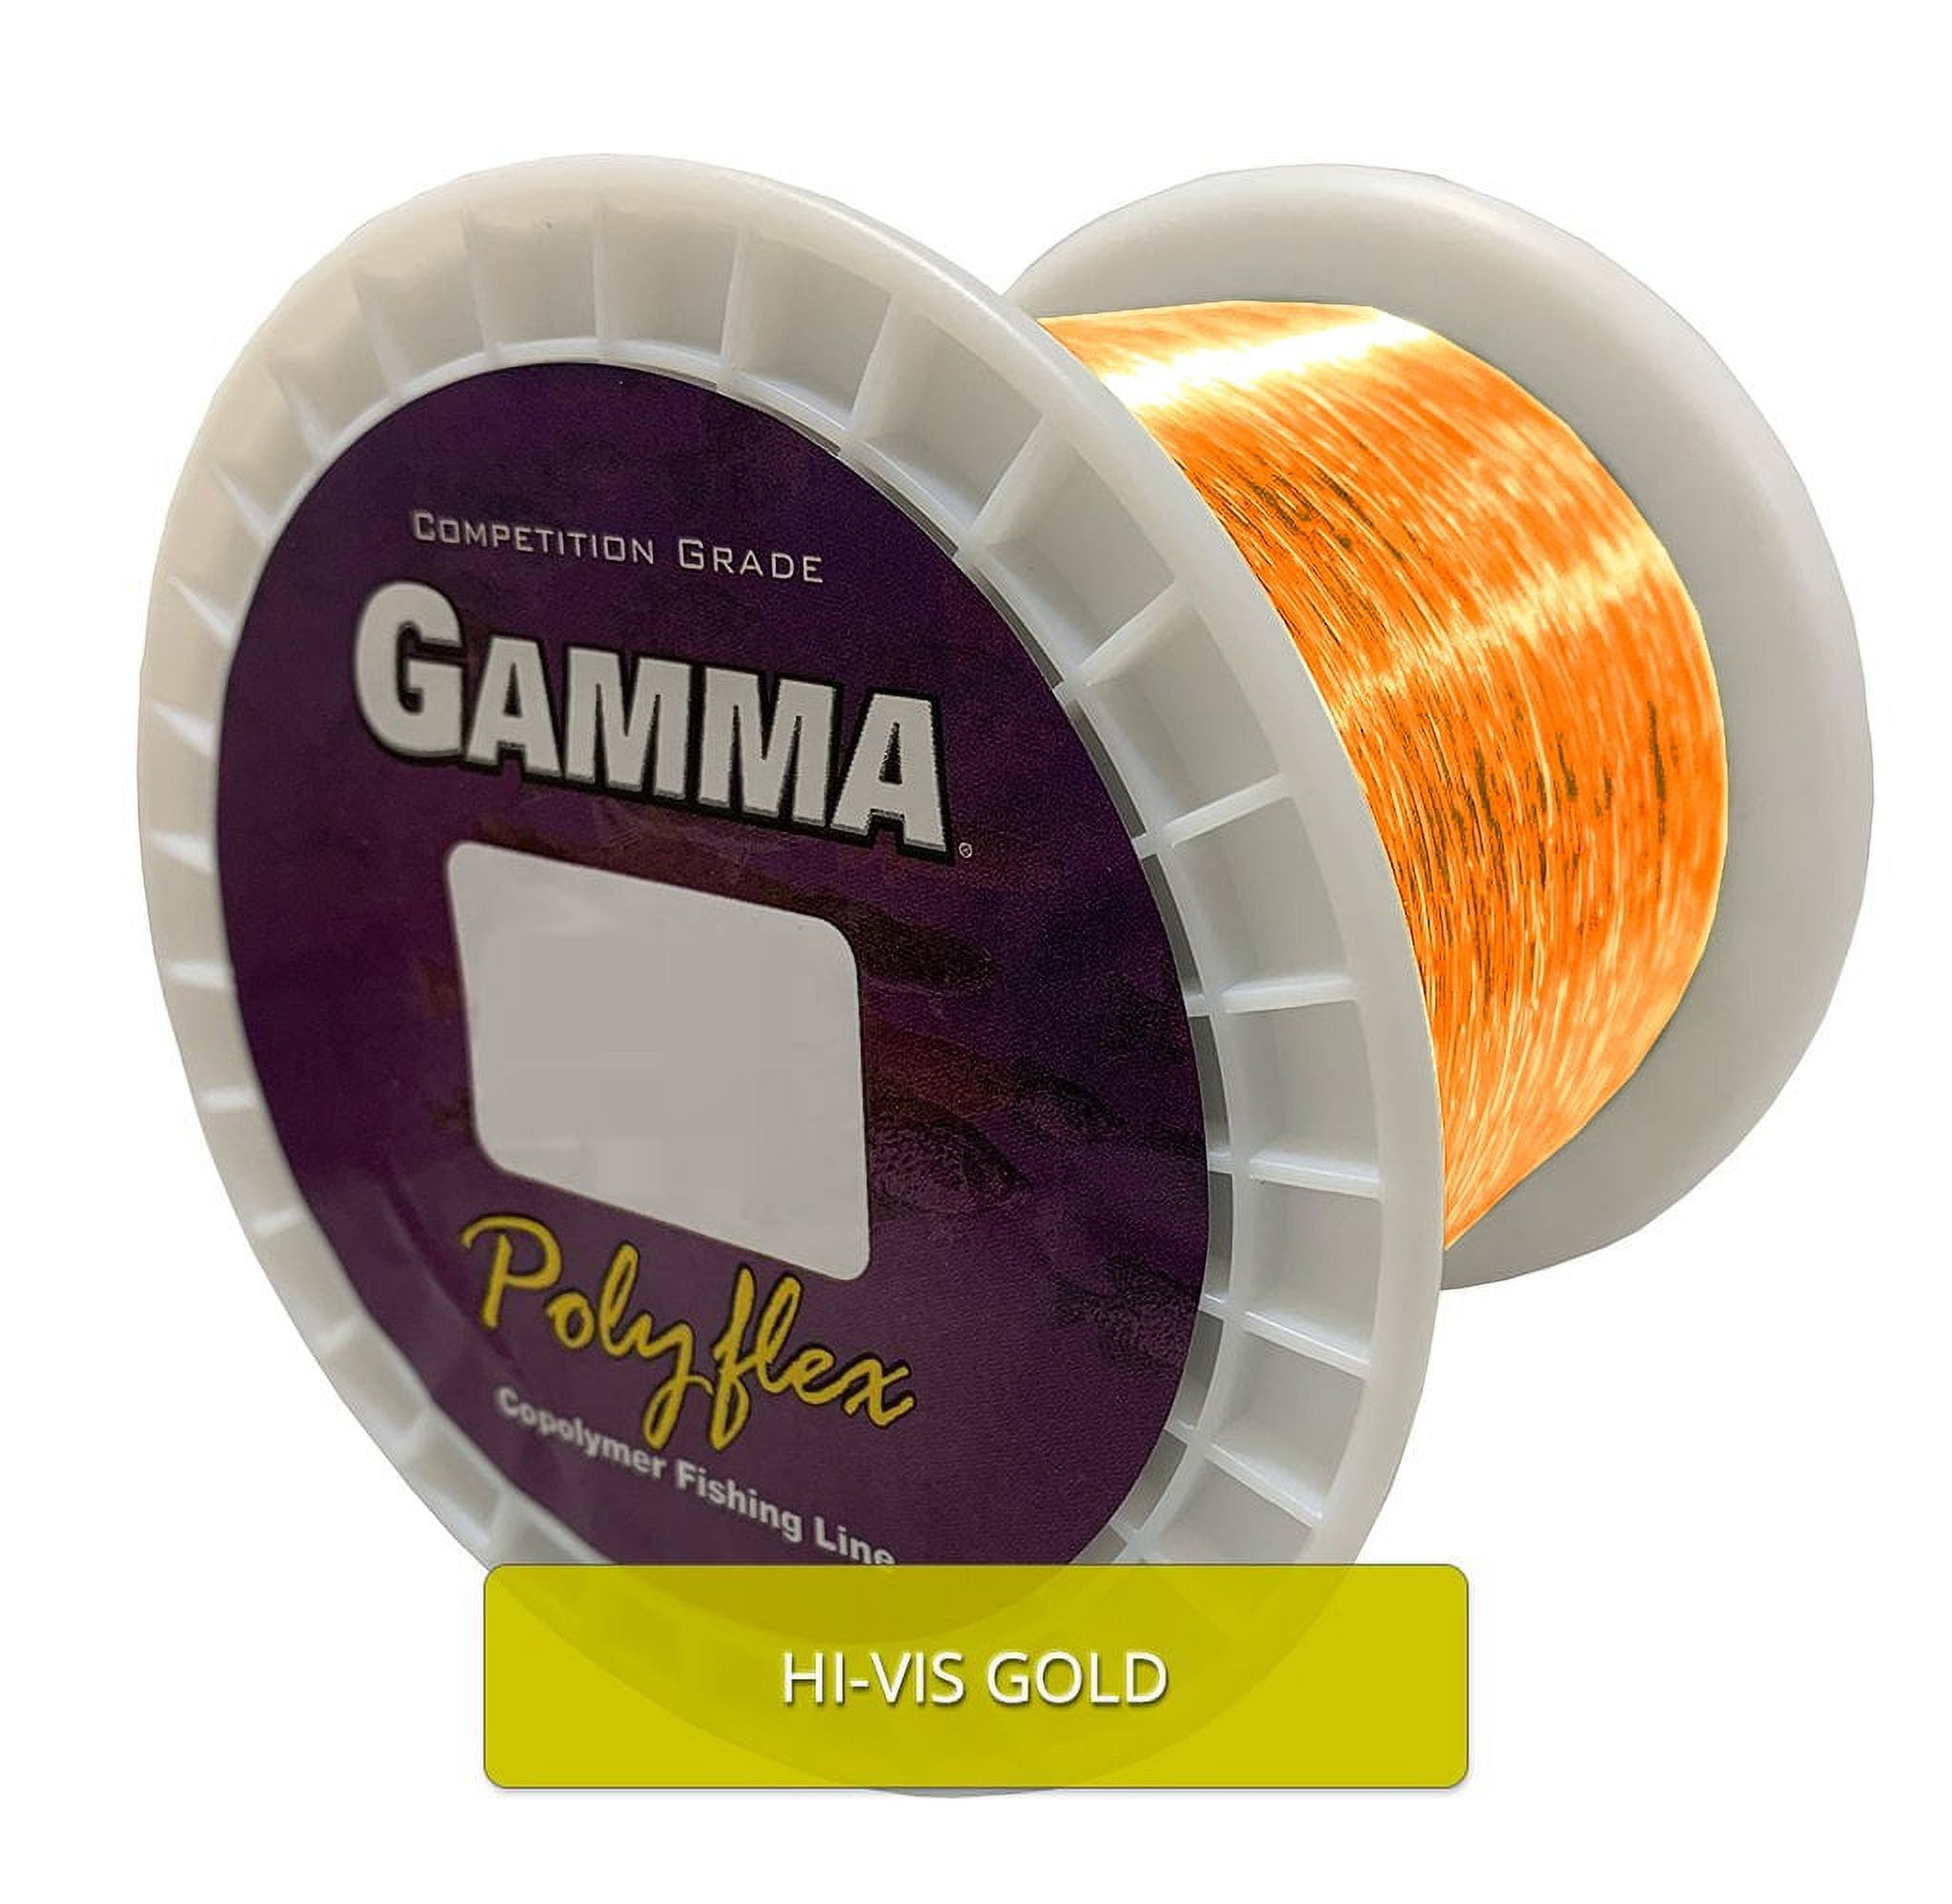 GAMMA Polyflex Copolymer Fishing Line Bulk Spool, Hi-Vis Gold, 14lb, 3000yd